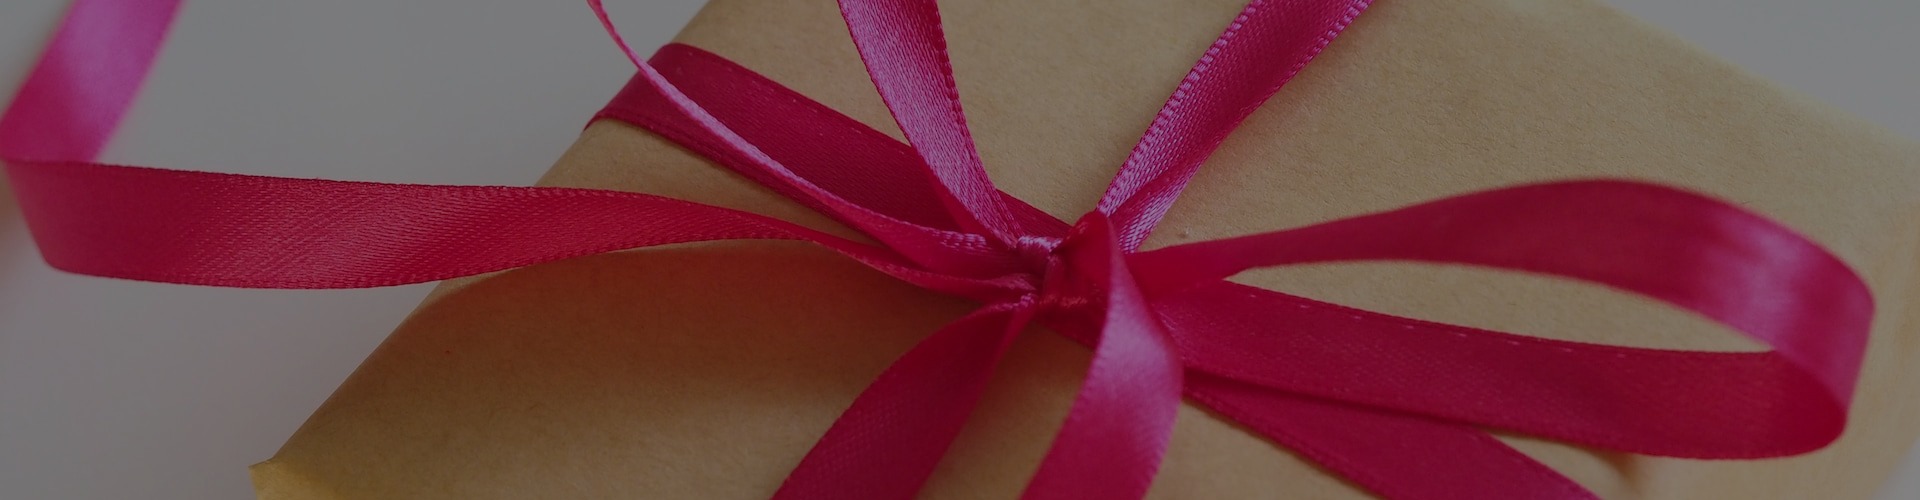 idée cadeau romantique - box anniversaire